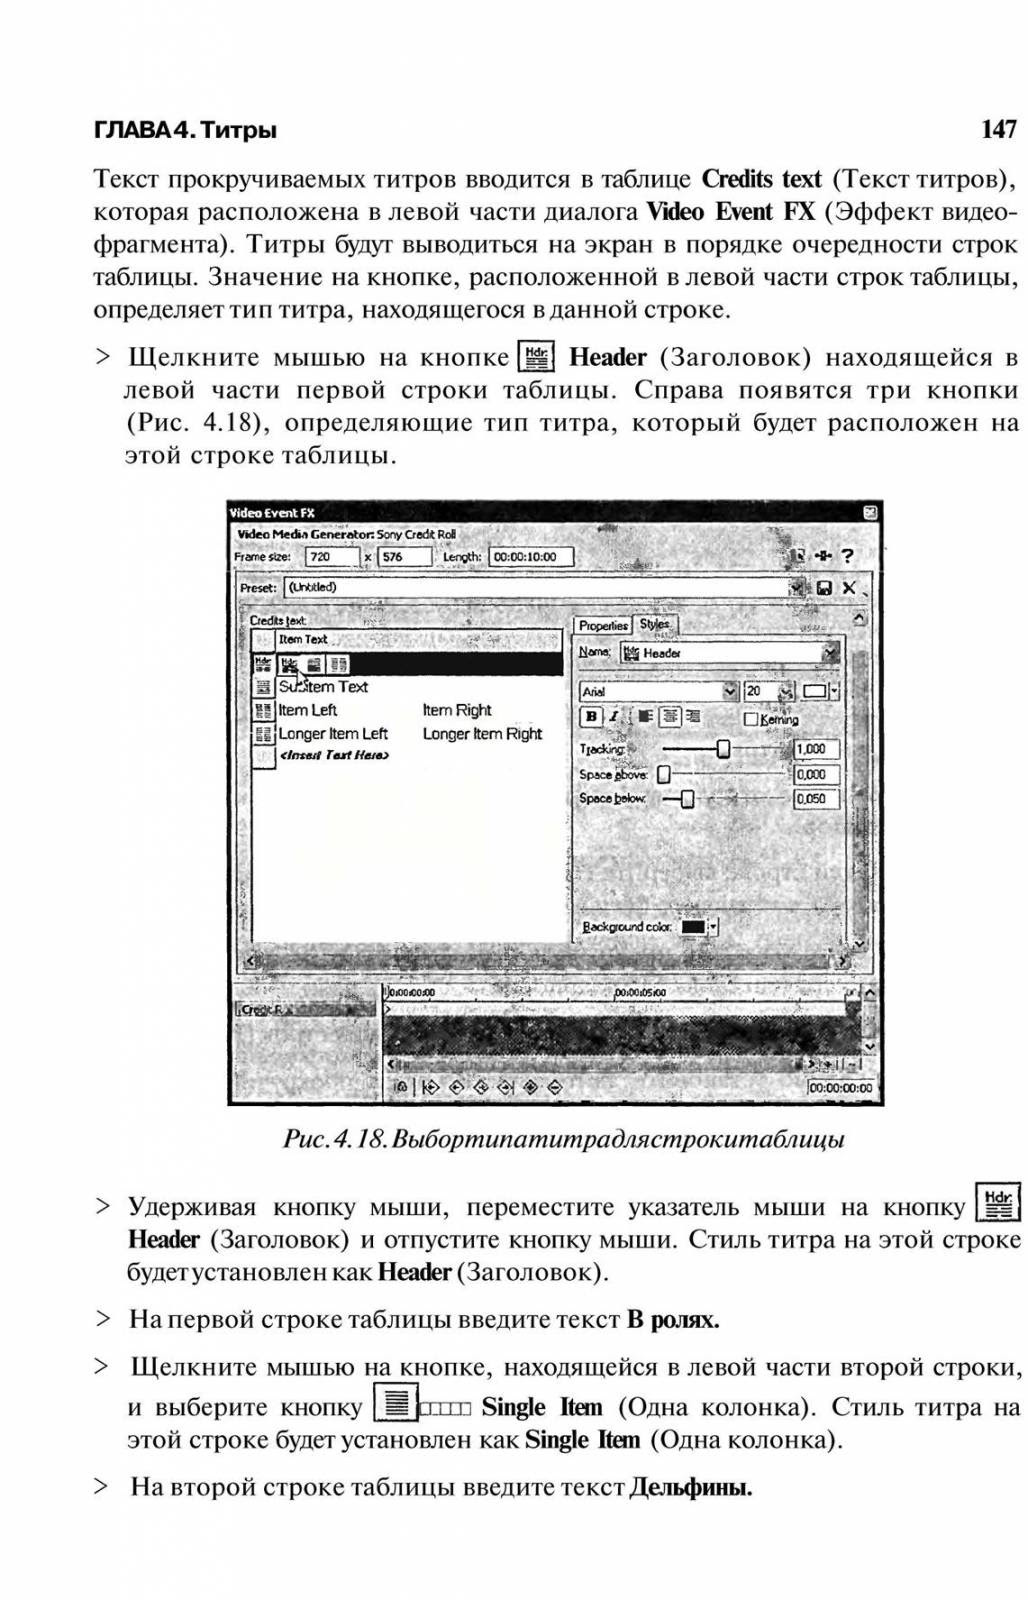 http://redaktori-uroki.3dn.ru/_ph/6/988484084.jpg